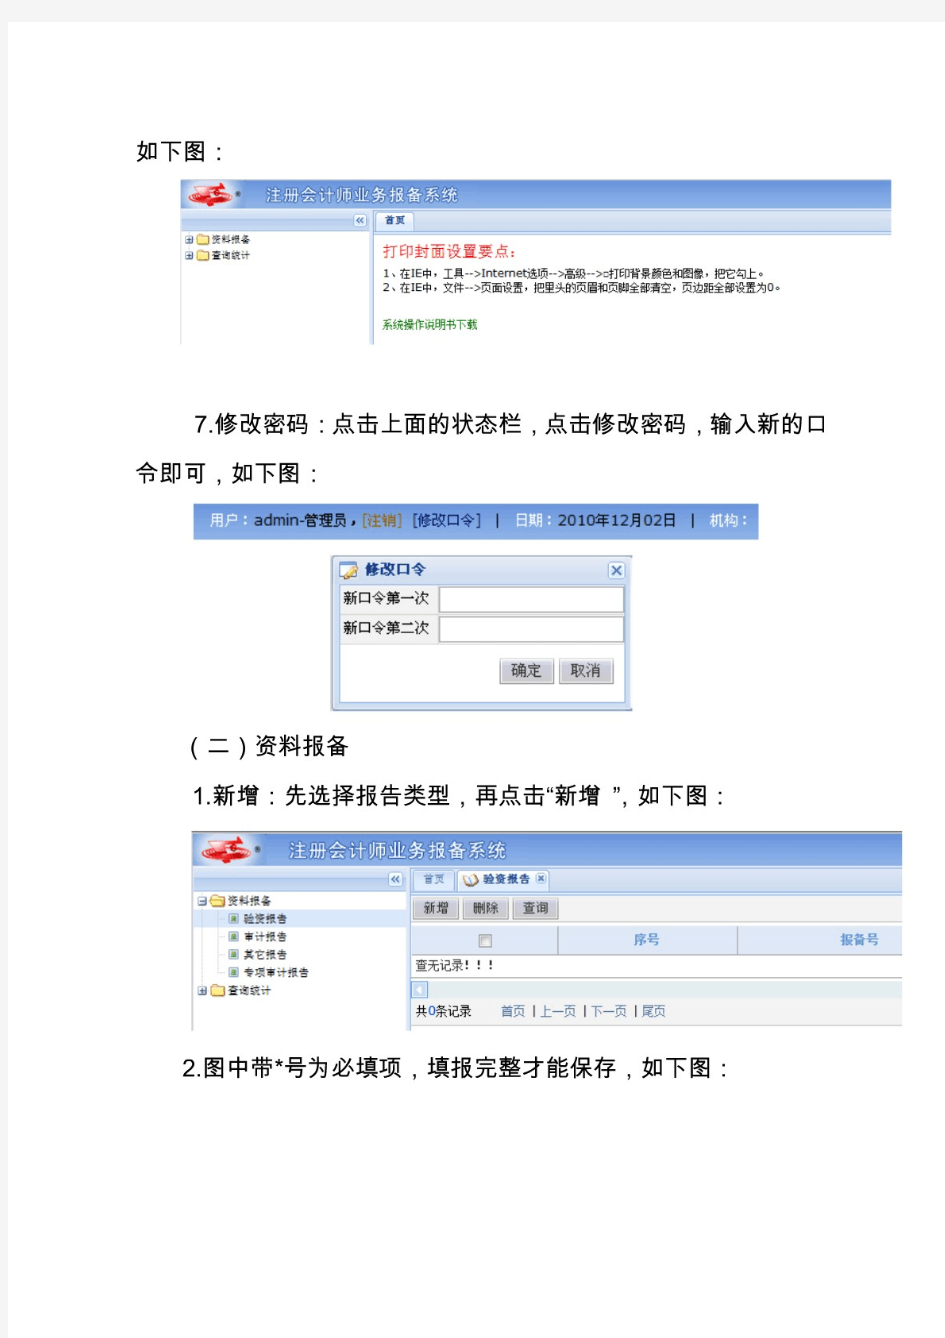 福建省注册会计师行业业务报备系统使用说明 - 福建省注册会计师协会